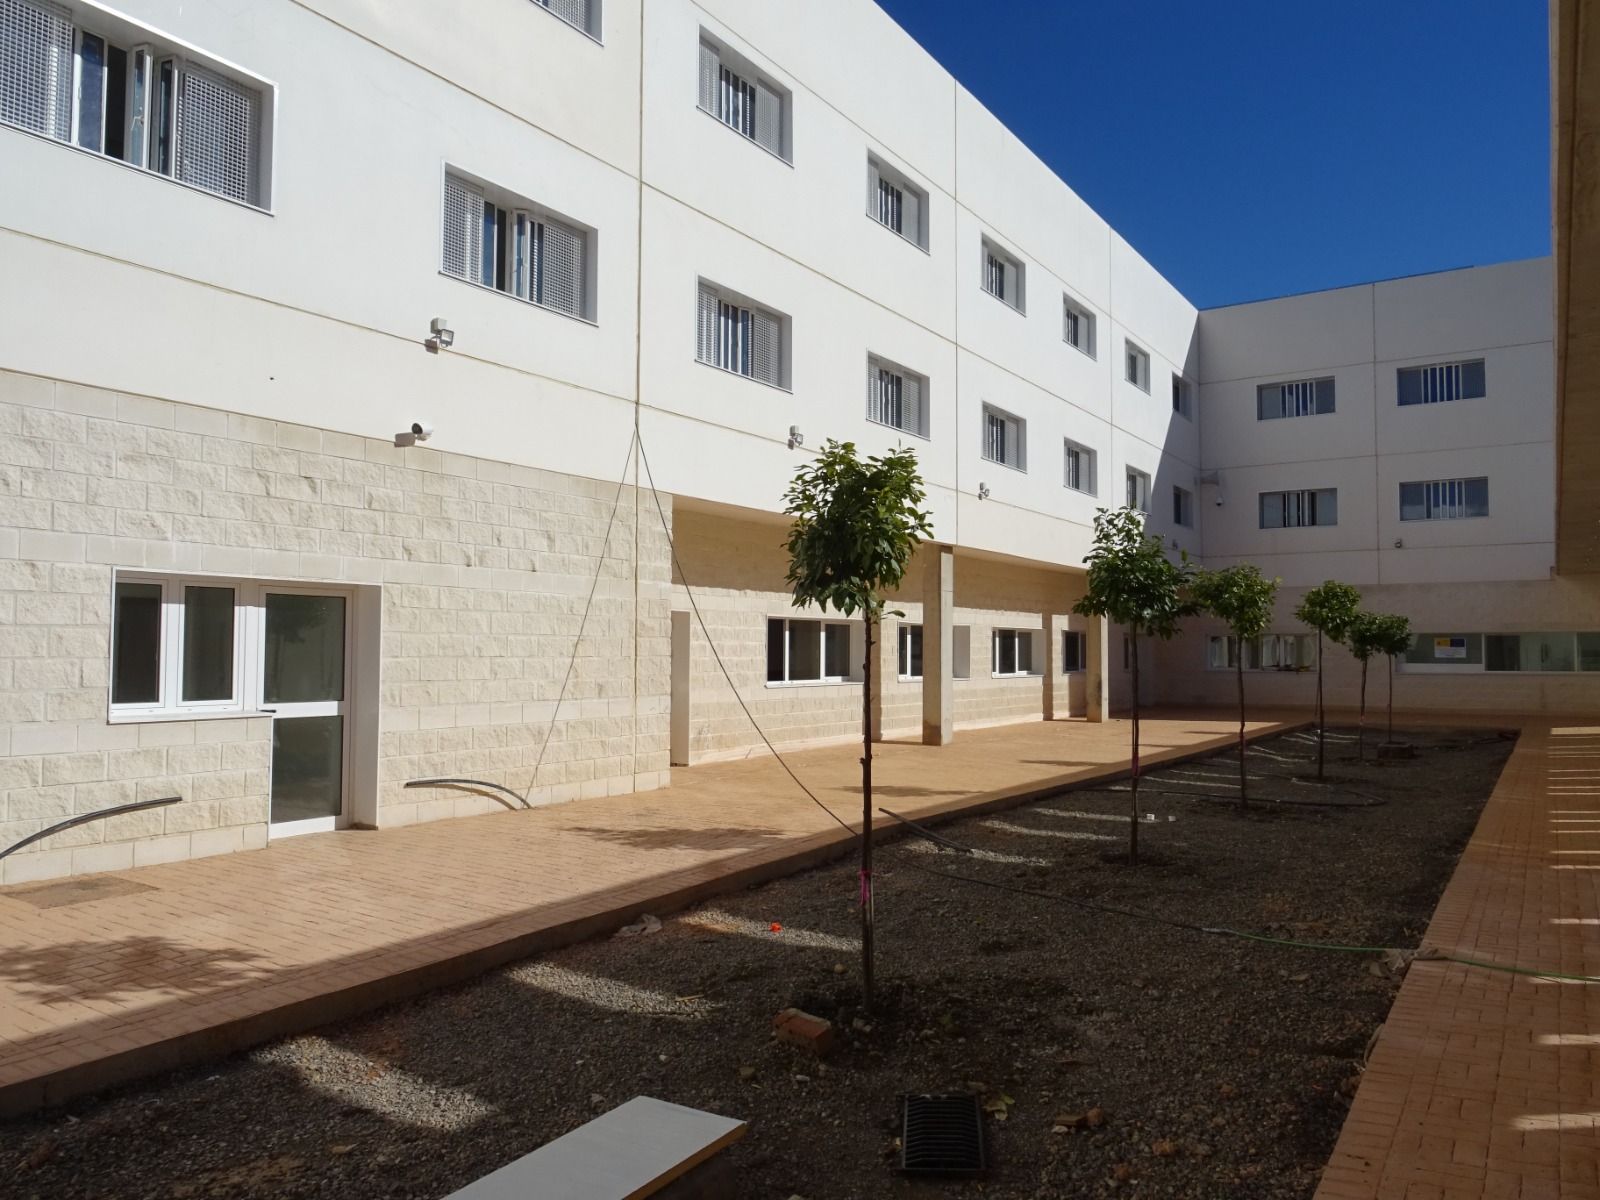 Fotografía de las instalaciones del nuevo CIE de Algeciras